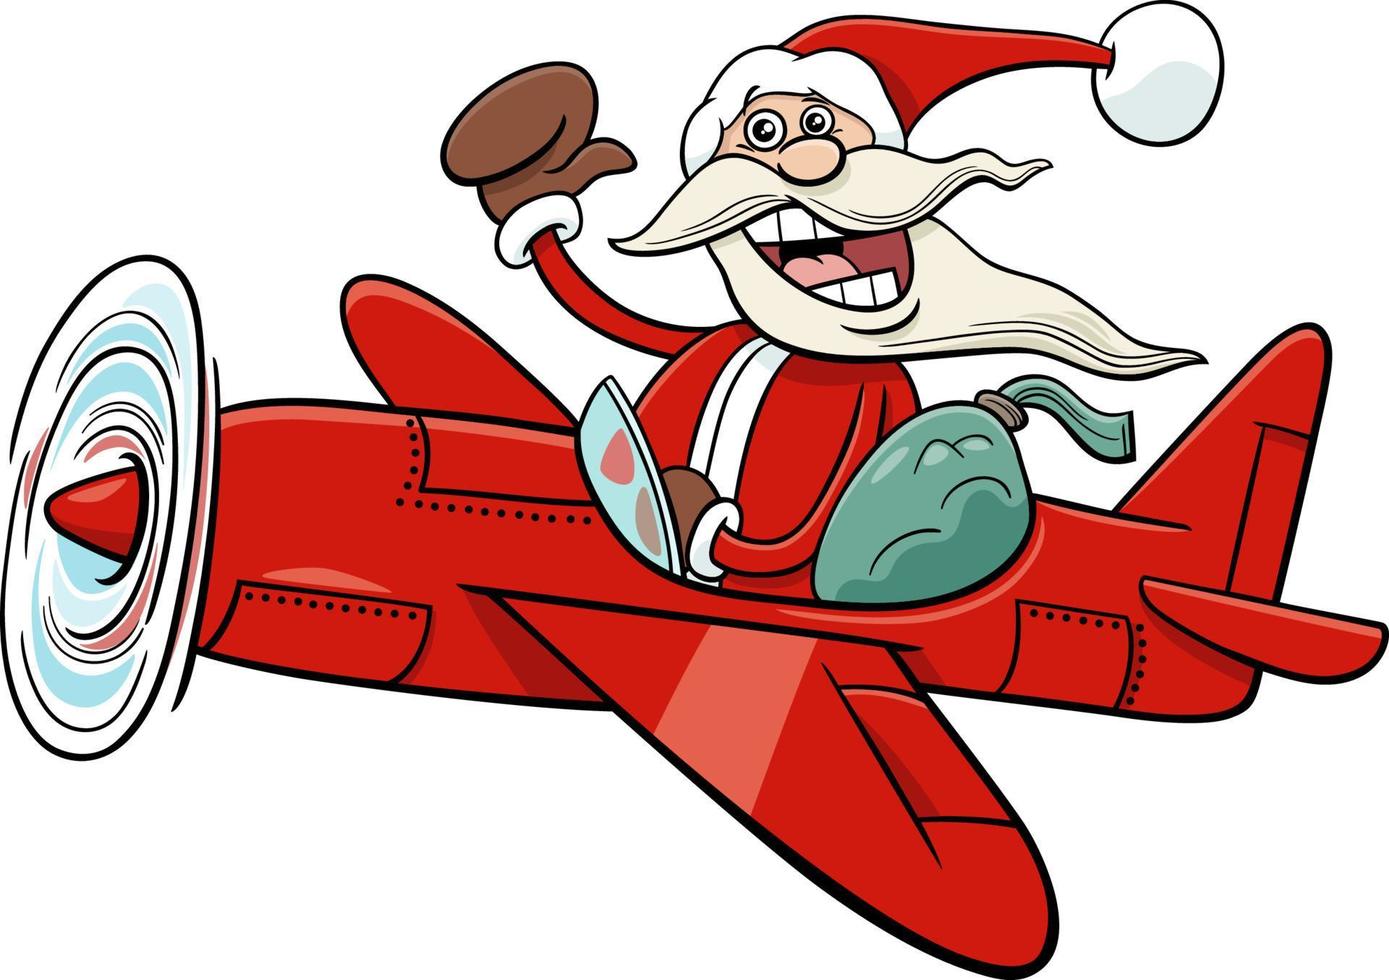 personaje de dibujos animados de santa claus en el avión en tiempo de navidad vector